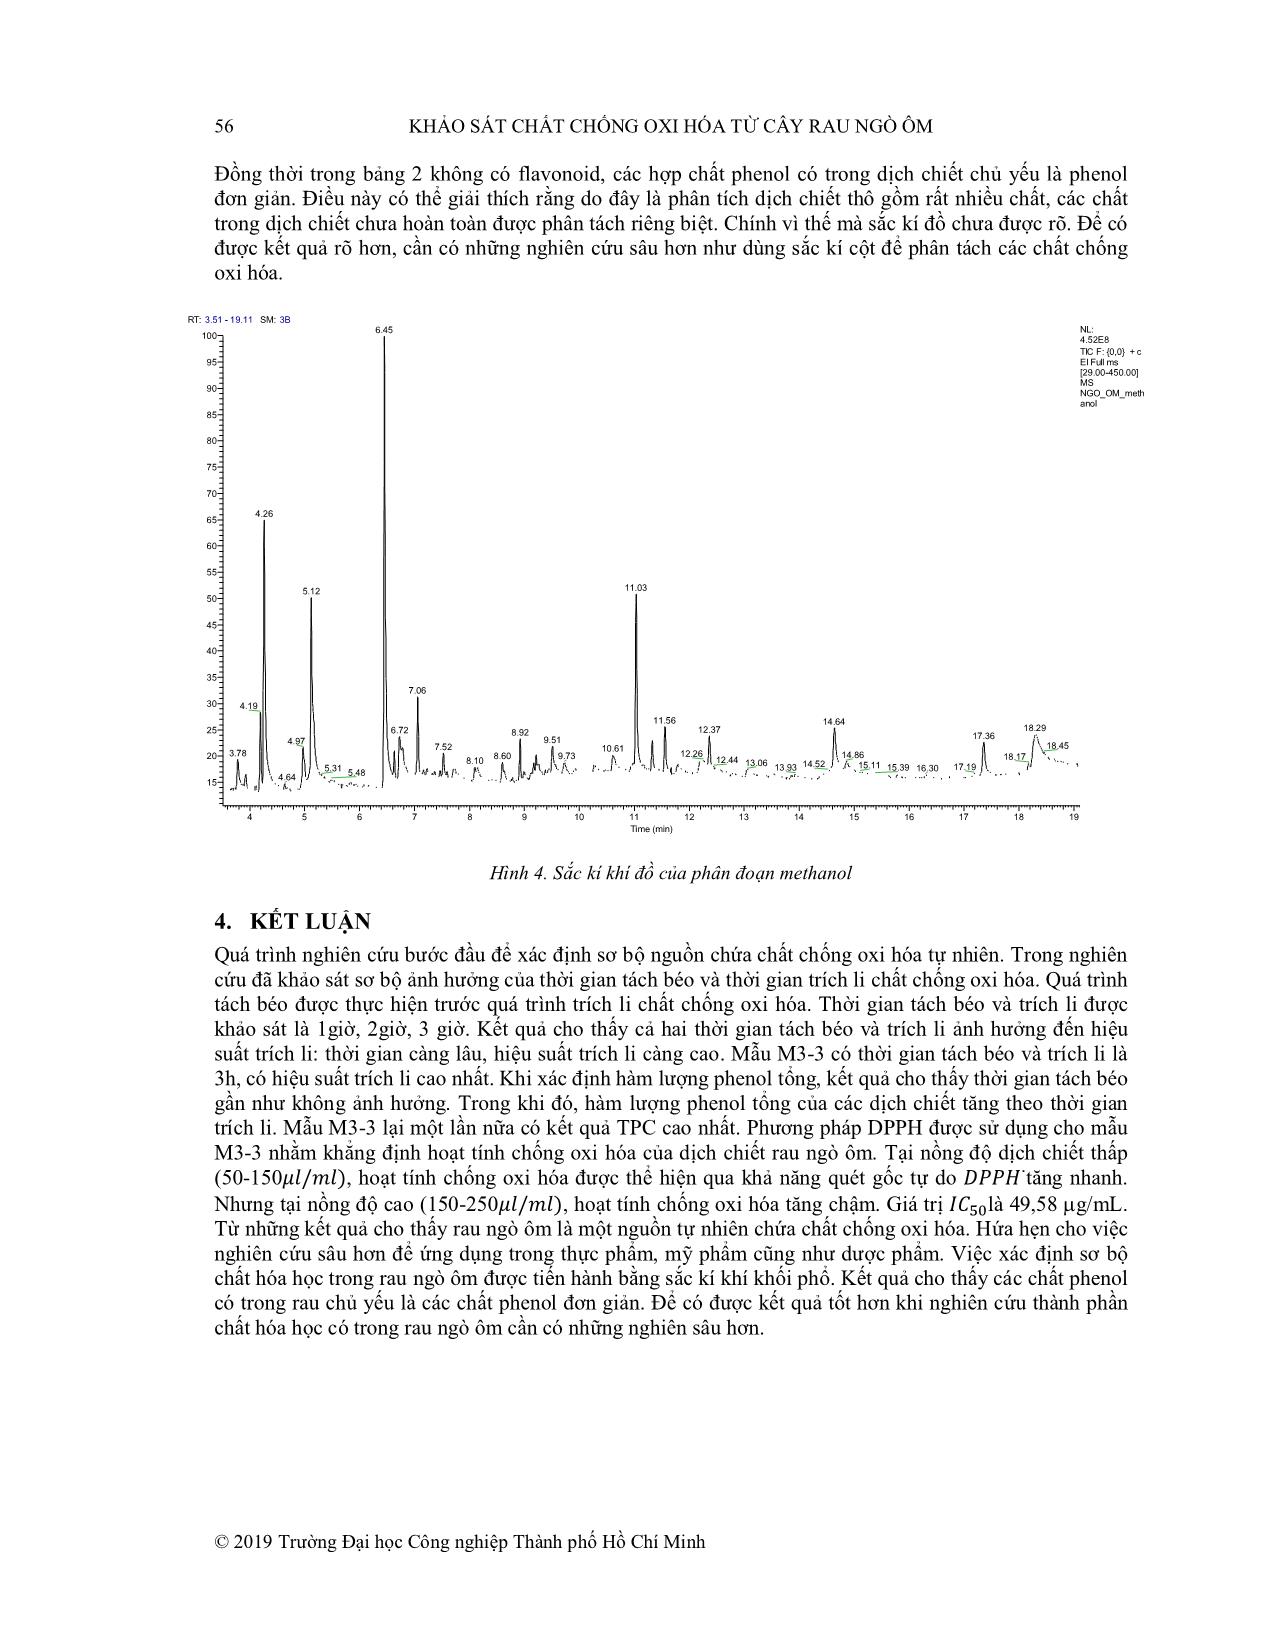 Khảo sát chất chống oxi hóa từ cây rau ngò ôm trang 7